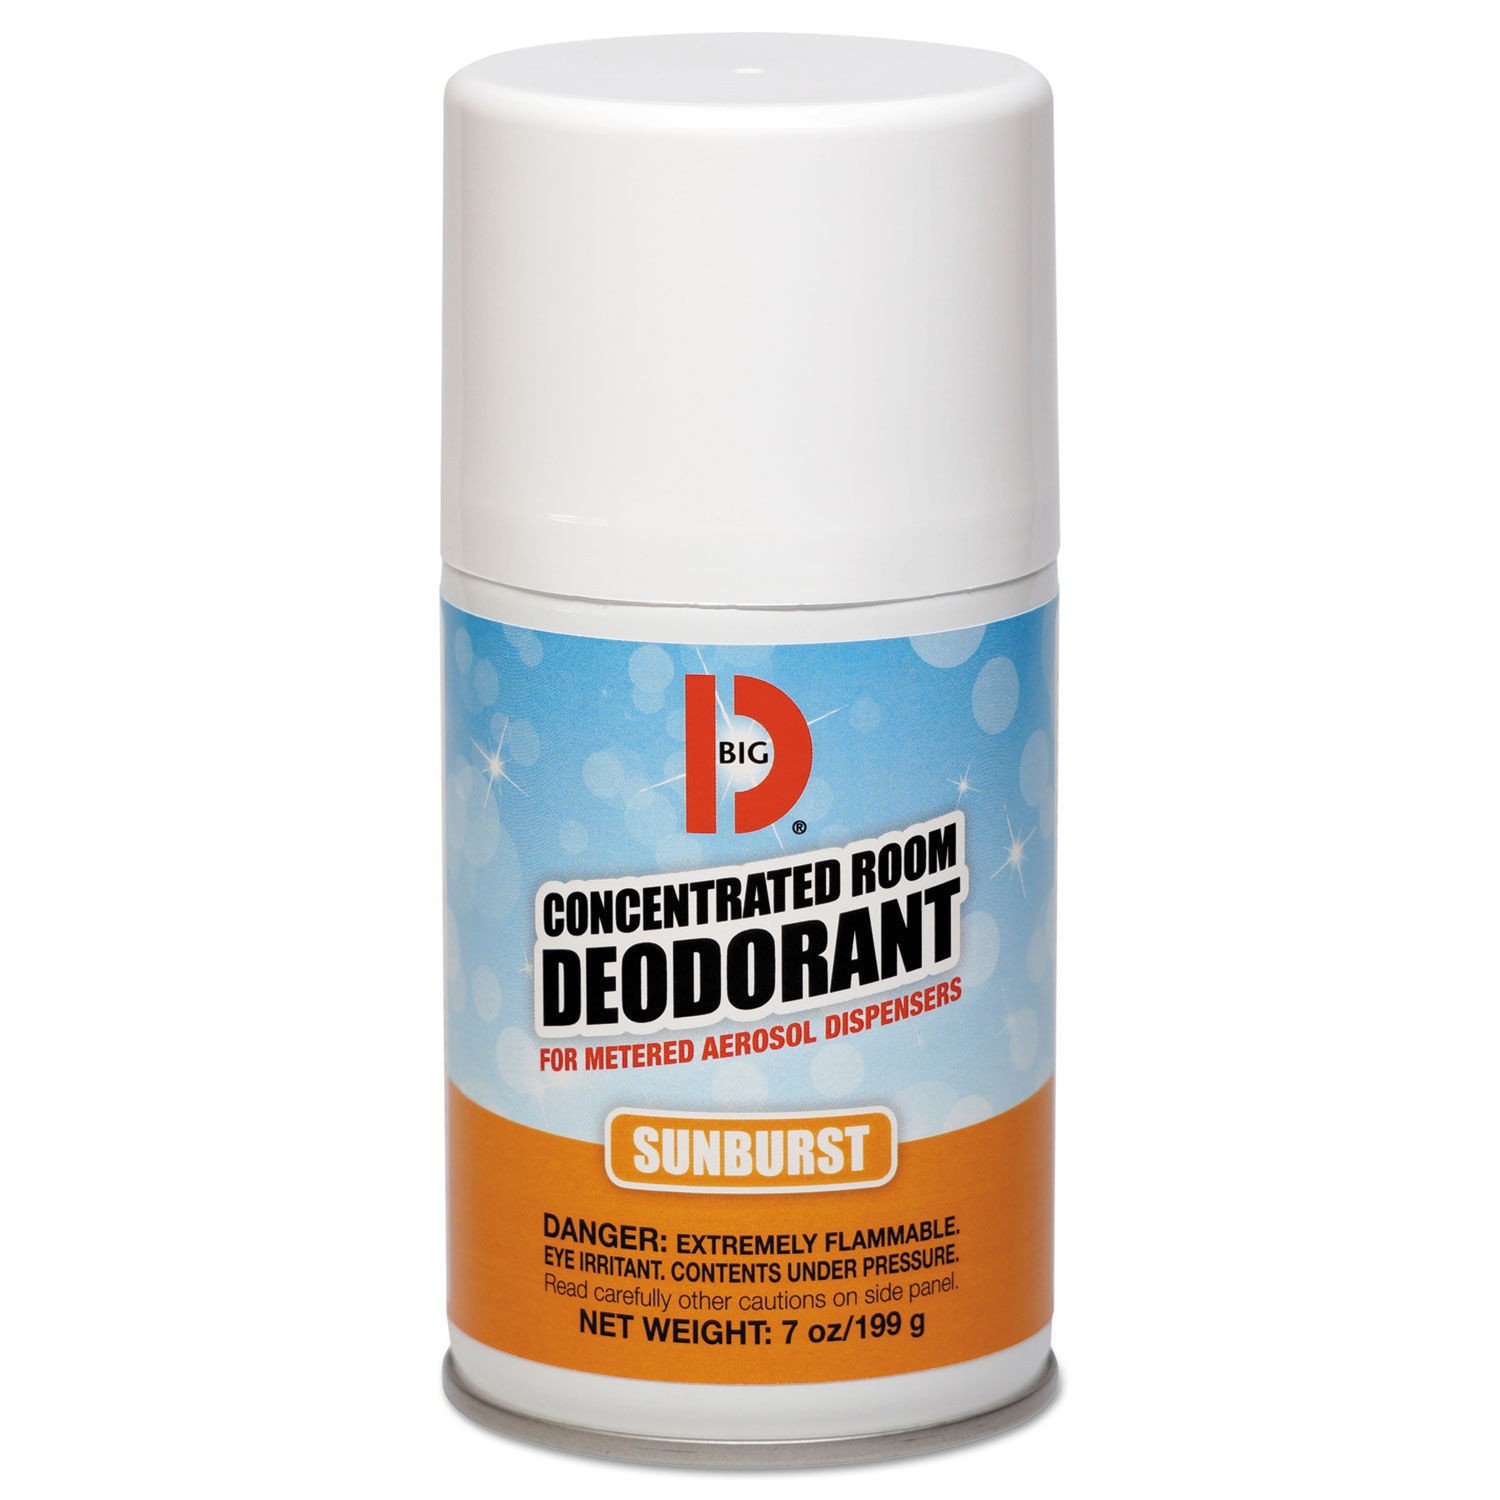 Metered Concentrated Room Deodorant, Sunburst Scent, 7 oz Aerosol, 12/Carton